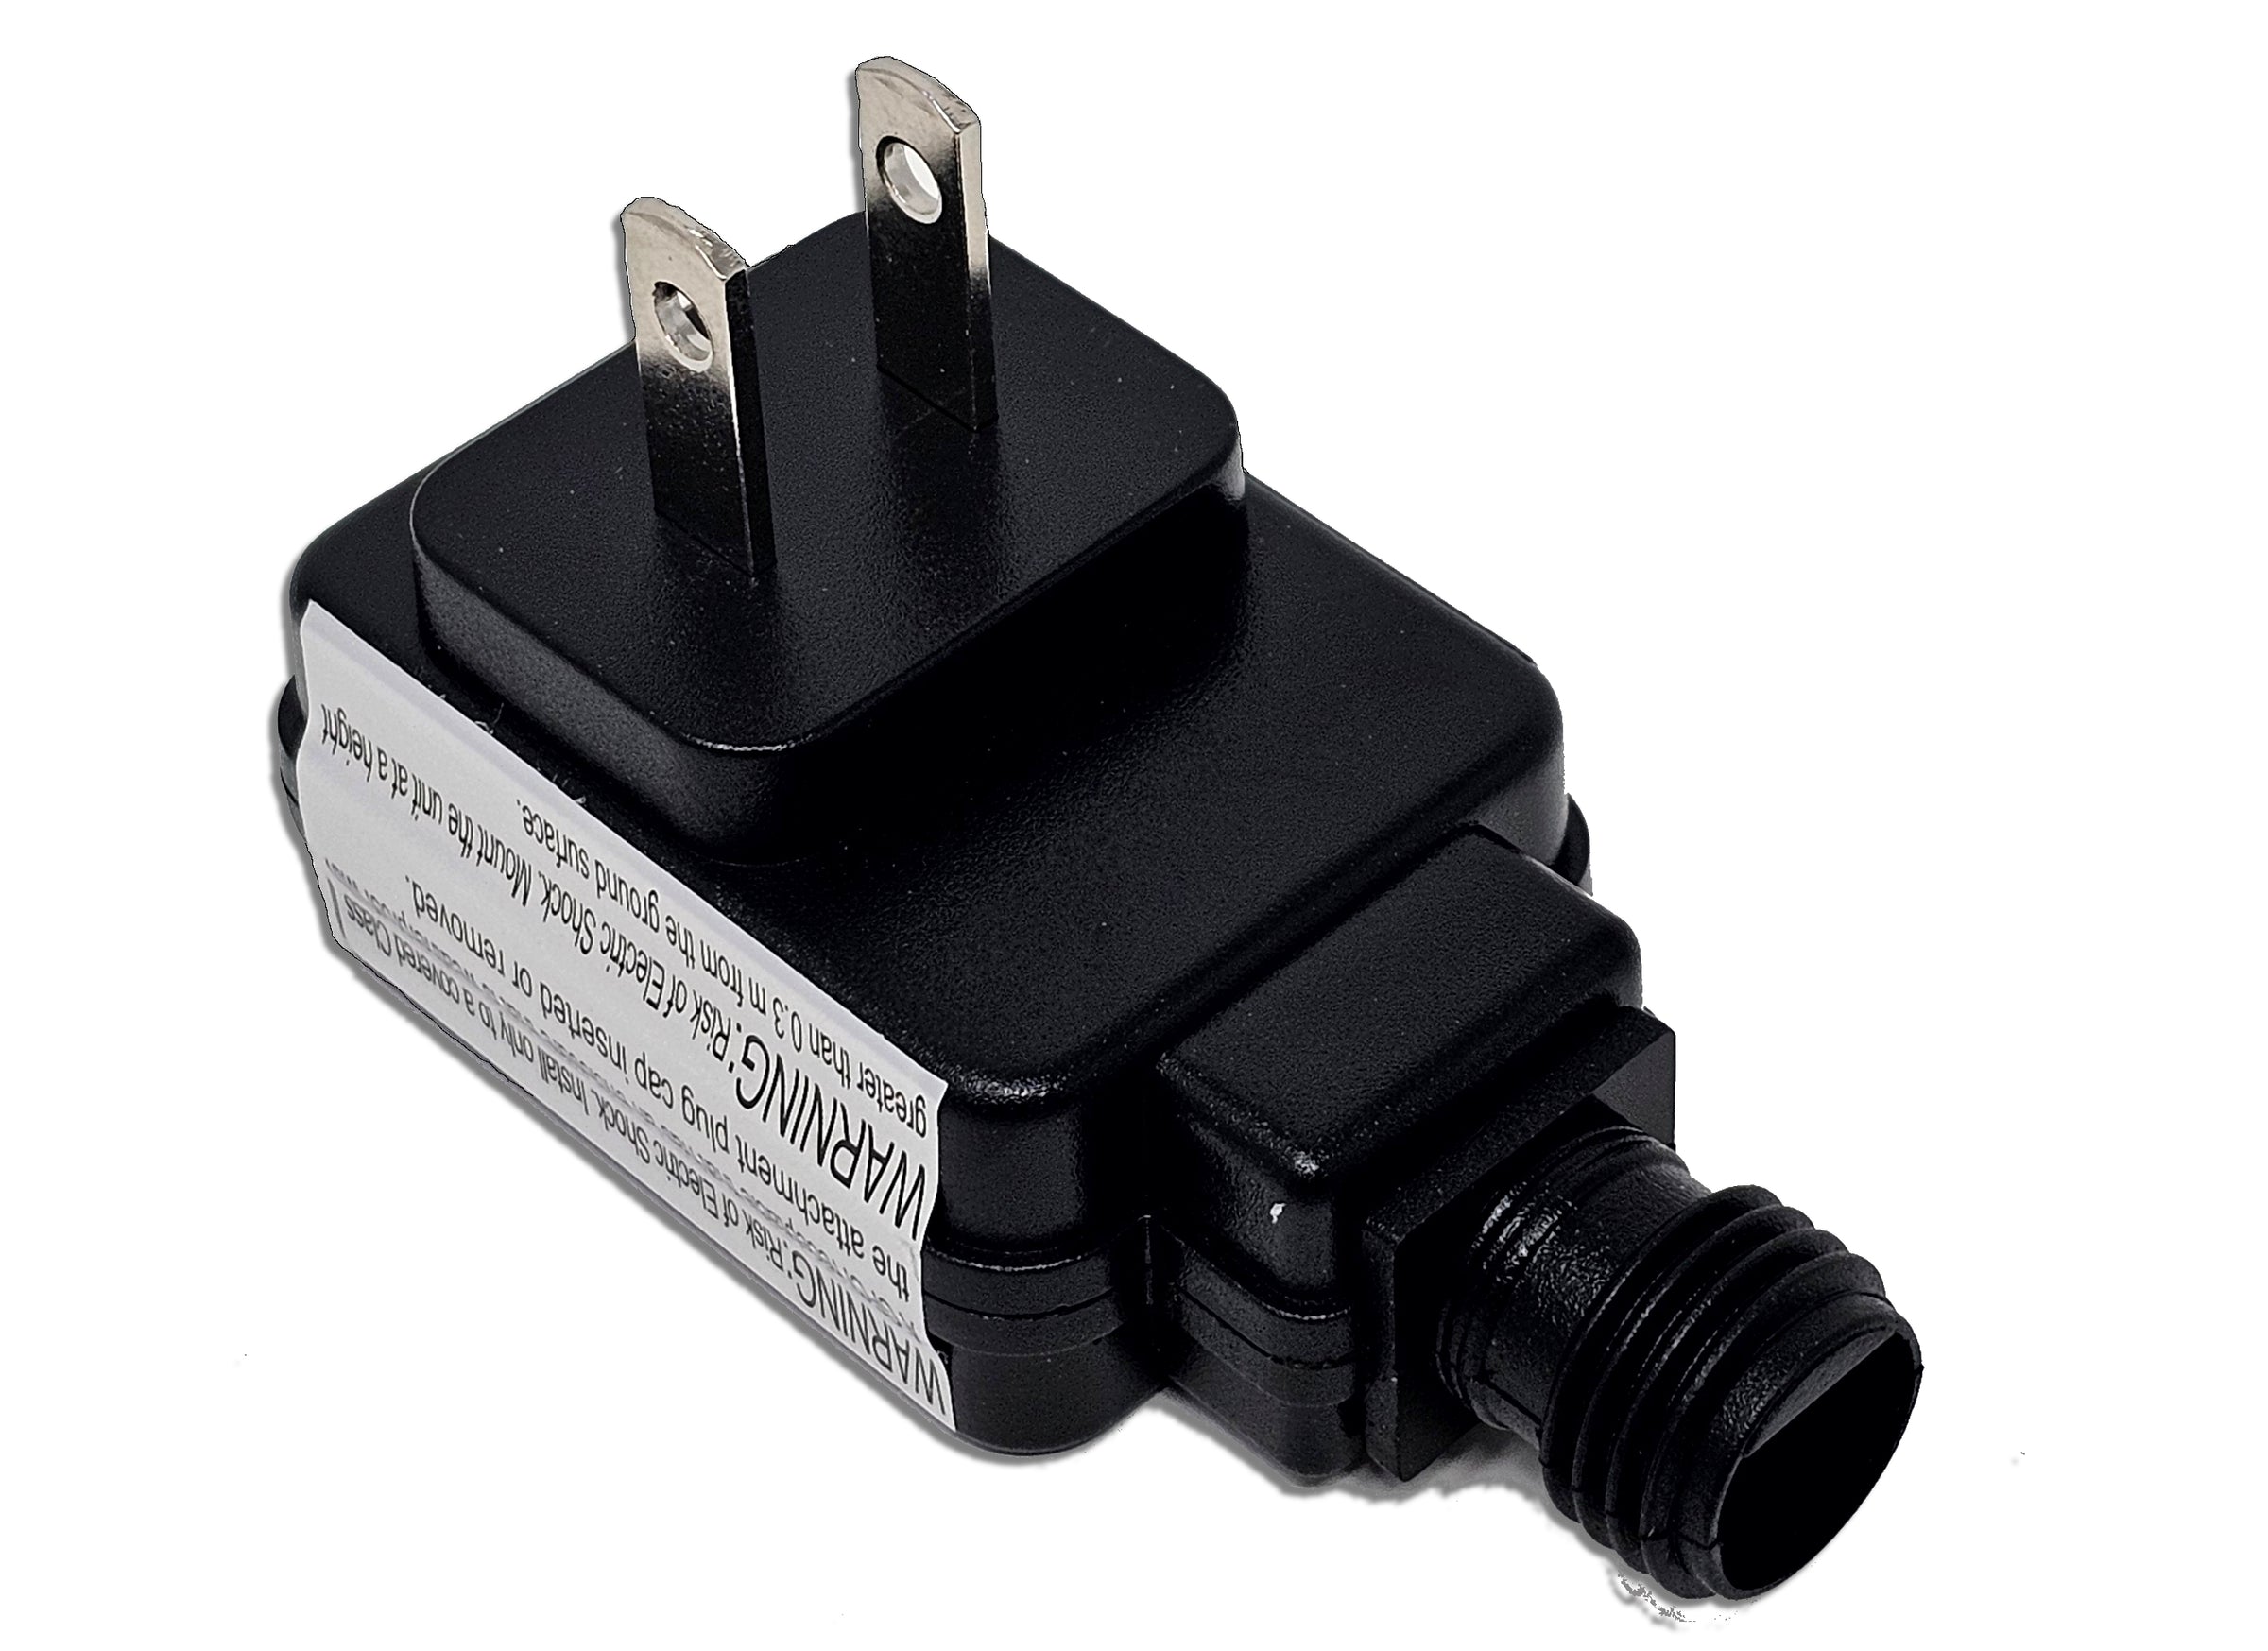 Xing Yuan 4.5v 1.0A Power Adapter Connection TIP A | INTERTEK 5003784 ...